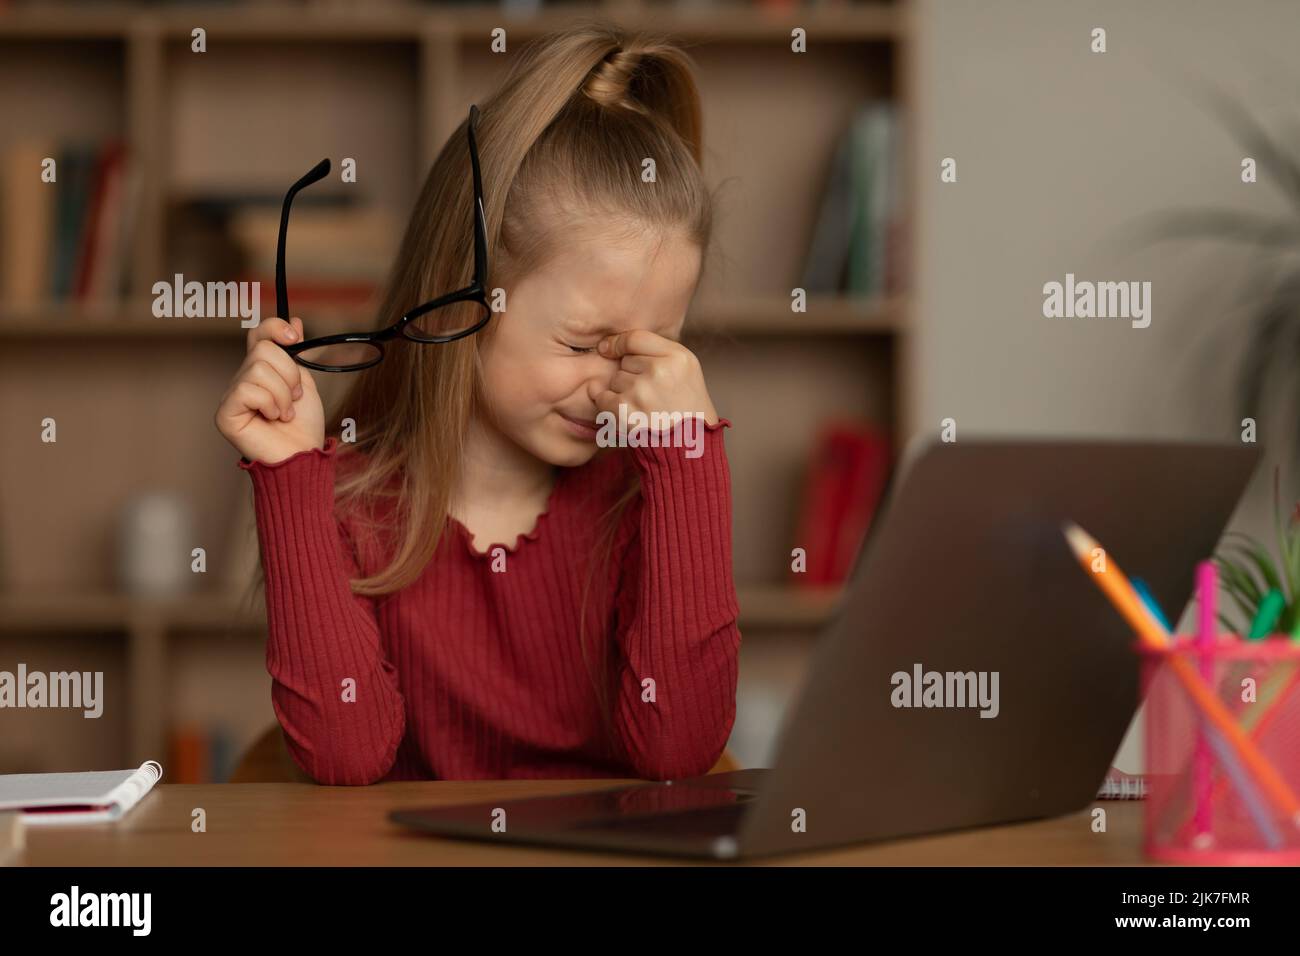 Fille qui prend des lunettes ayant une mauvaise vue près d'un ordinateur portable intérieur Banque D'Images